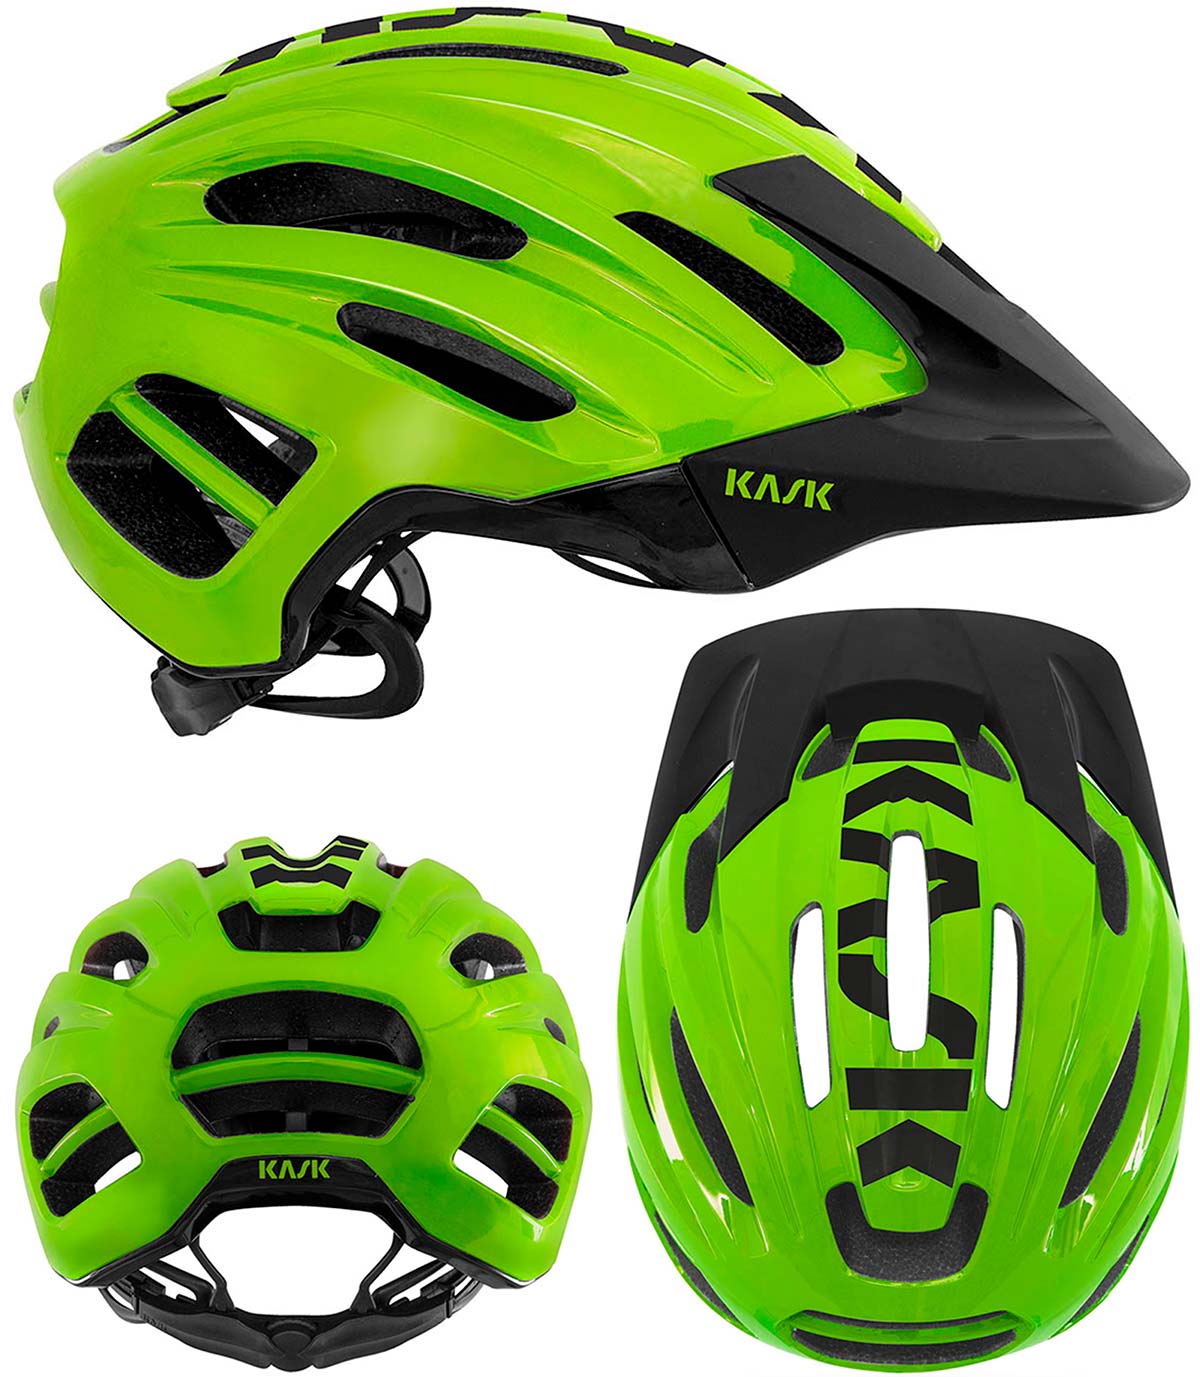 En TodoMountainBike: Kask Caipi, un casco de Trail/Enduro diseñado para ofrecer protección completa sin sacrificar un peso ligero